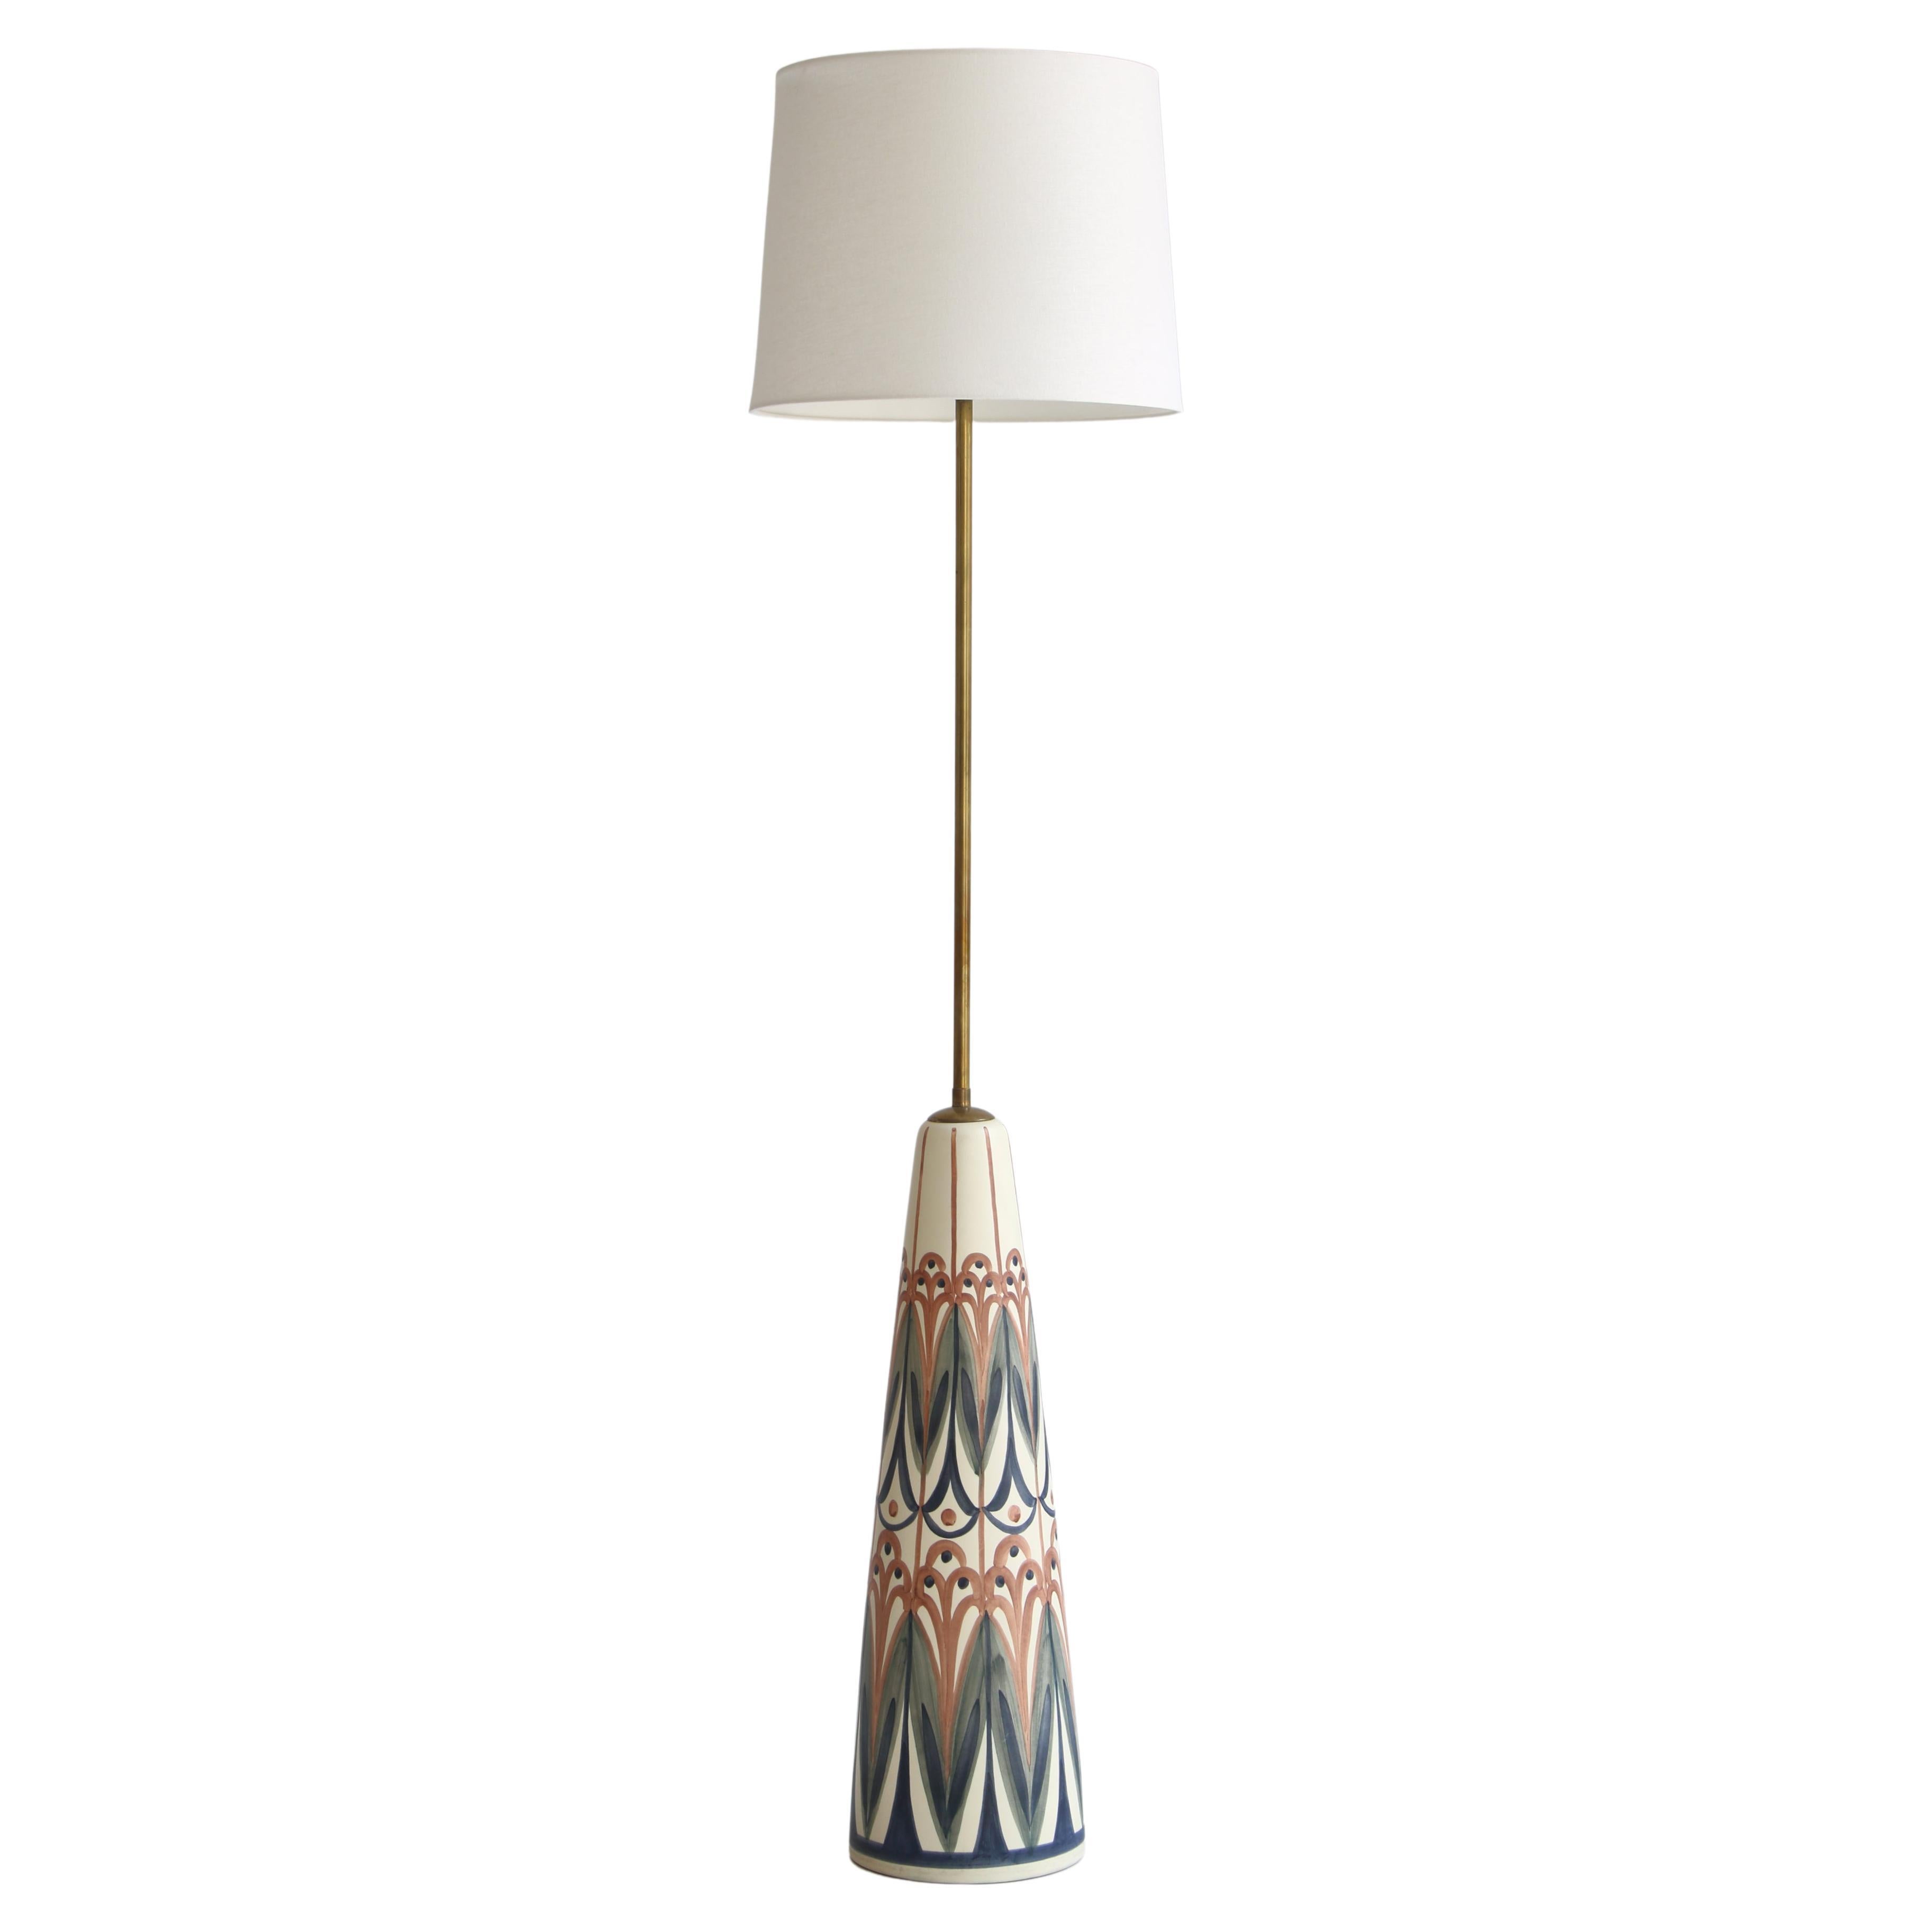 Huge Ceramic Floor Lamp by Rigmor Nielsen for Søholm, 1960s, Danish Modern